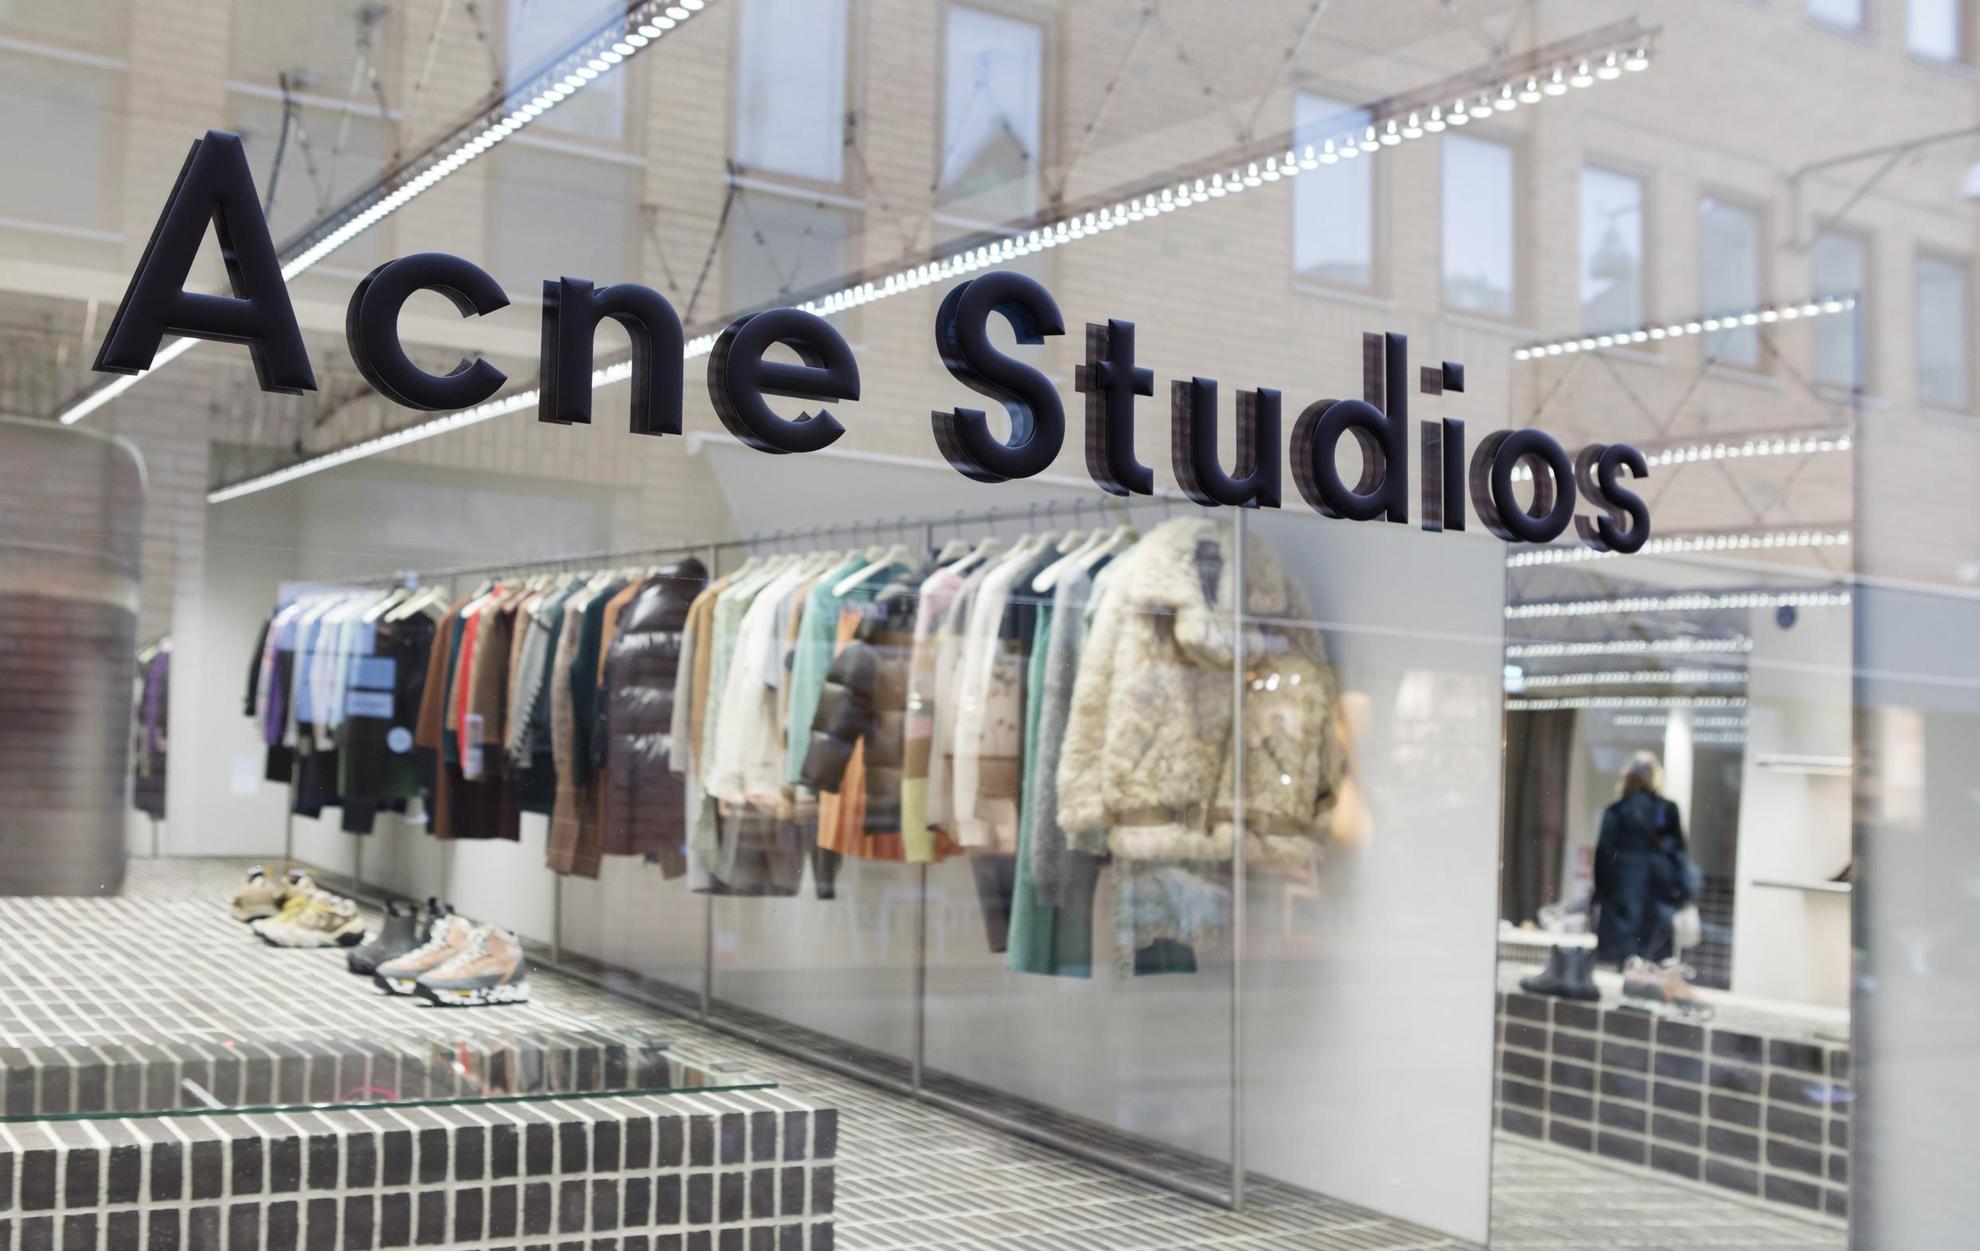 Das Schaufenster des Acne Studios in Stockholm. Auf einer  Kleiderstange entlang der Wand hängen zahlreiche Kleidungsstücke.